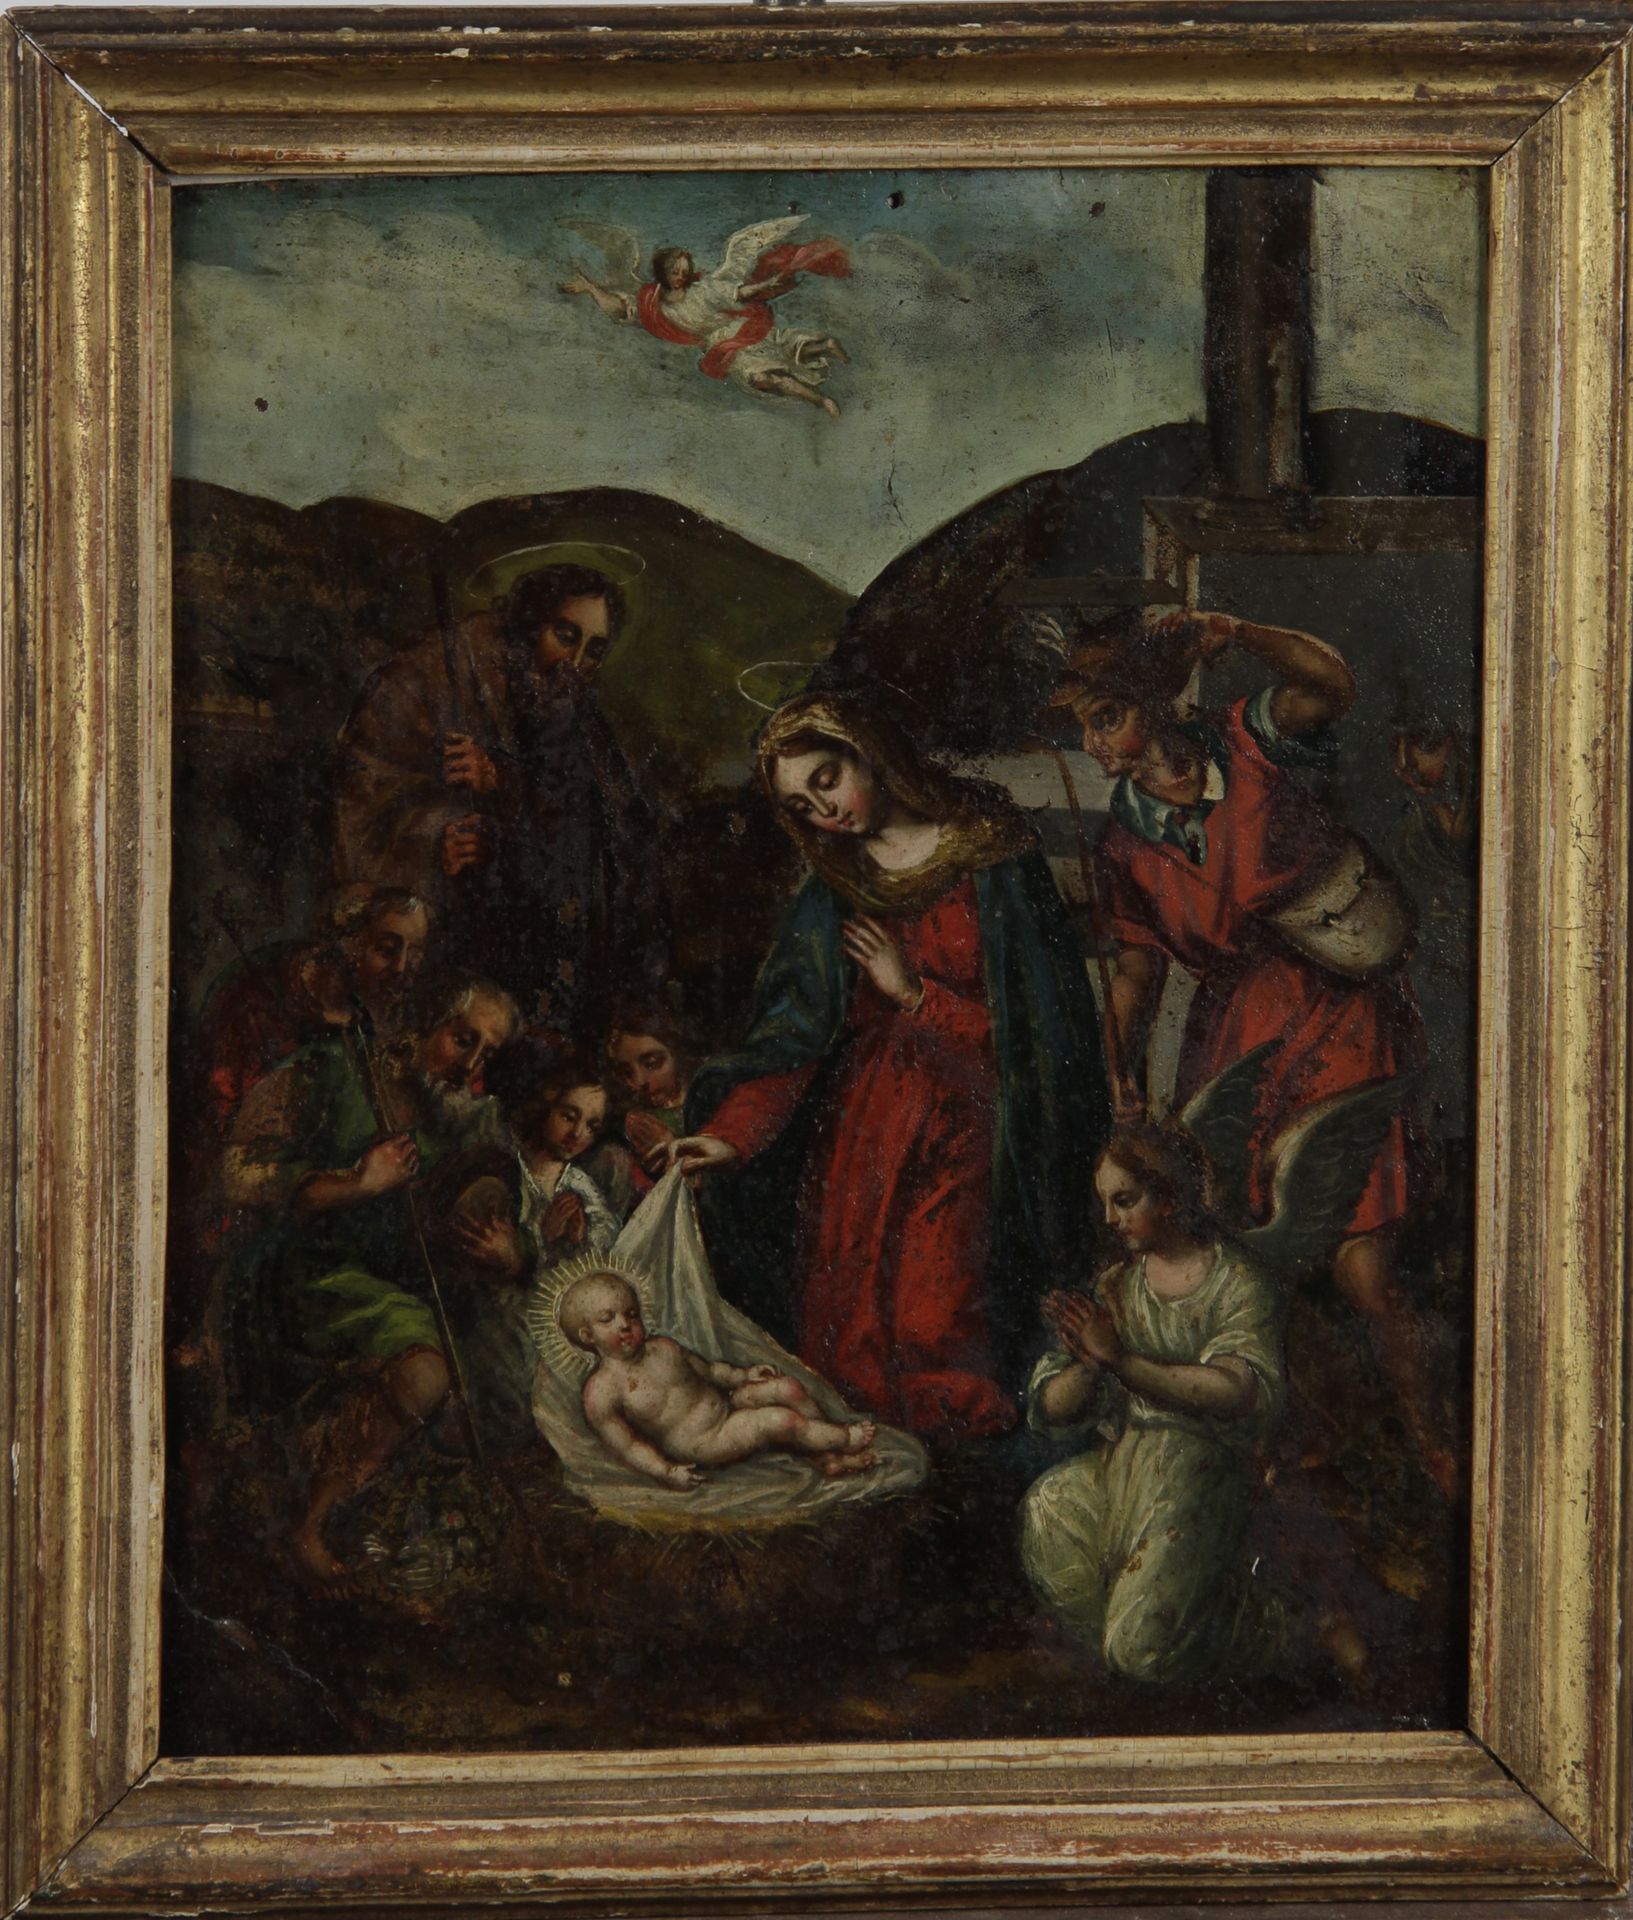 Null 17世纪学校的 "耶稣诞生 "铜板油画。

H.27 x W. 22 cm

(震荡、变形和修复)